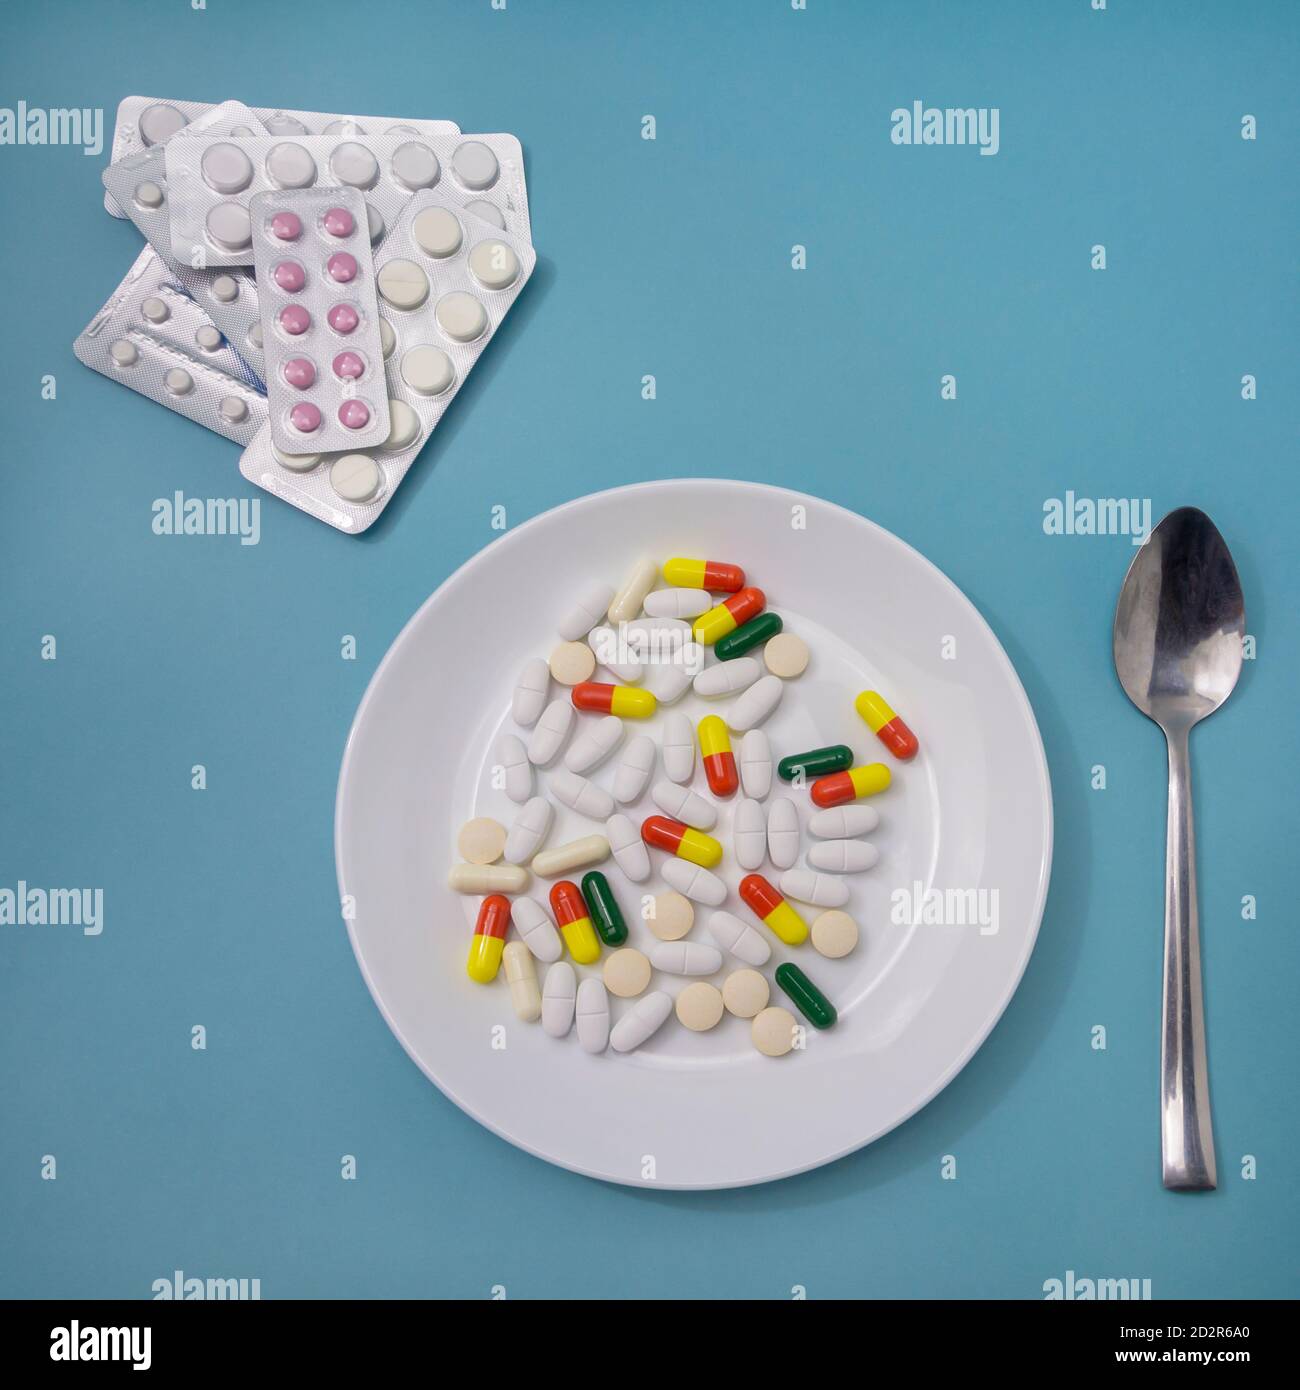 Piastra con aspirina e antibiotici su fondo blu. Concetto di farmacologia,  abuso di farmaci. Dimensione quadrata Foto stock - Alamy